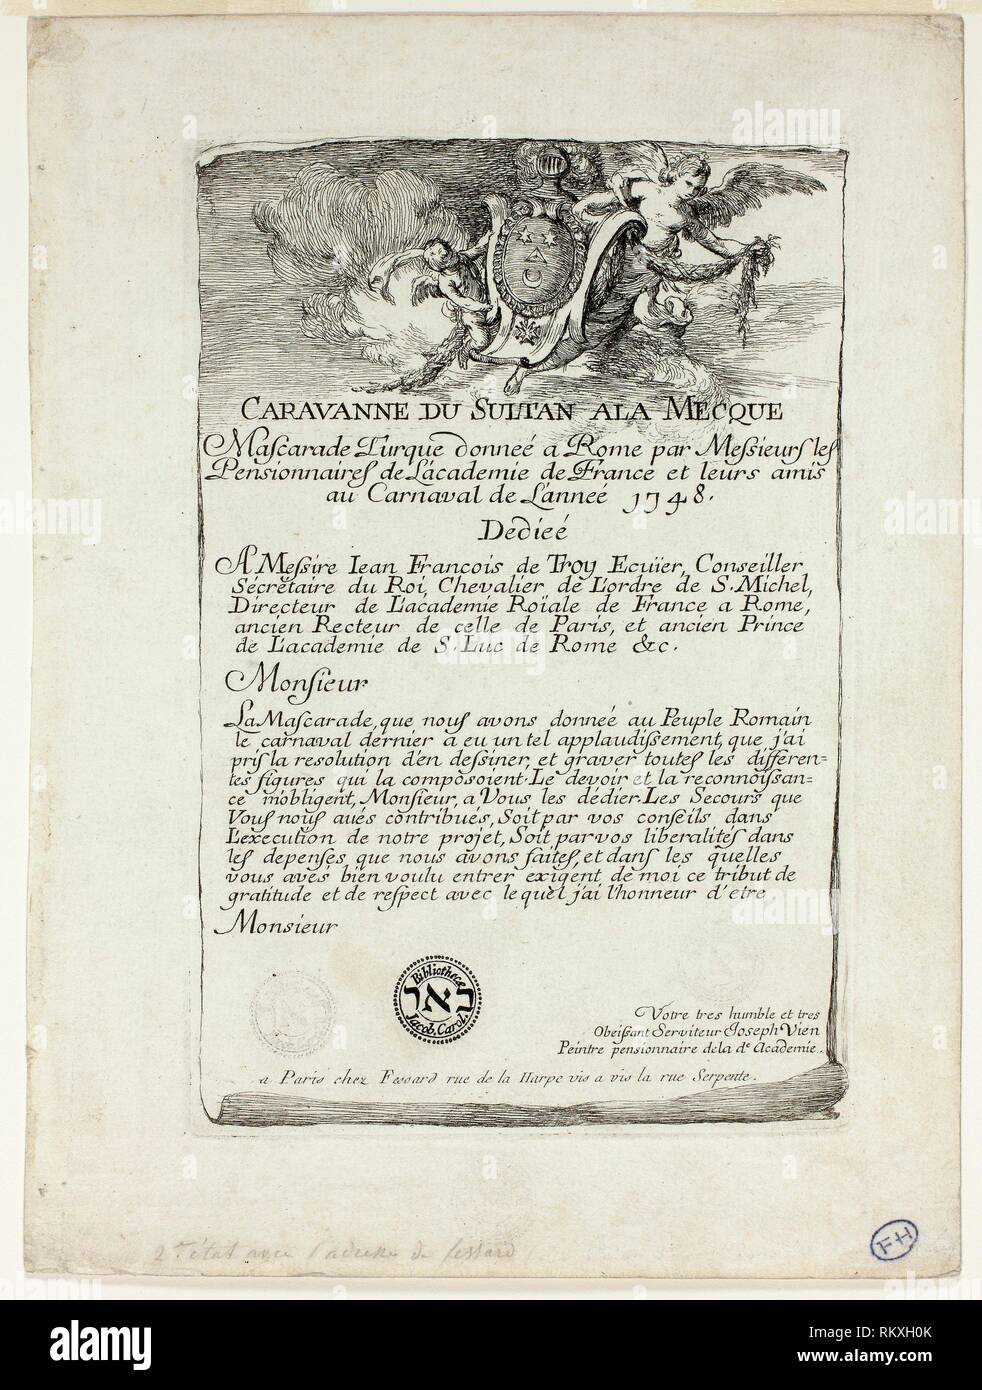 Page de titre, à partir de la caravanne du Sultan à la Mecque - 1748 - Joseph Marie Vien Français, 1716-1809 - Artiste : Joseph Marie Vien, I, origine : France, Date : Banque D'Images